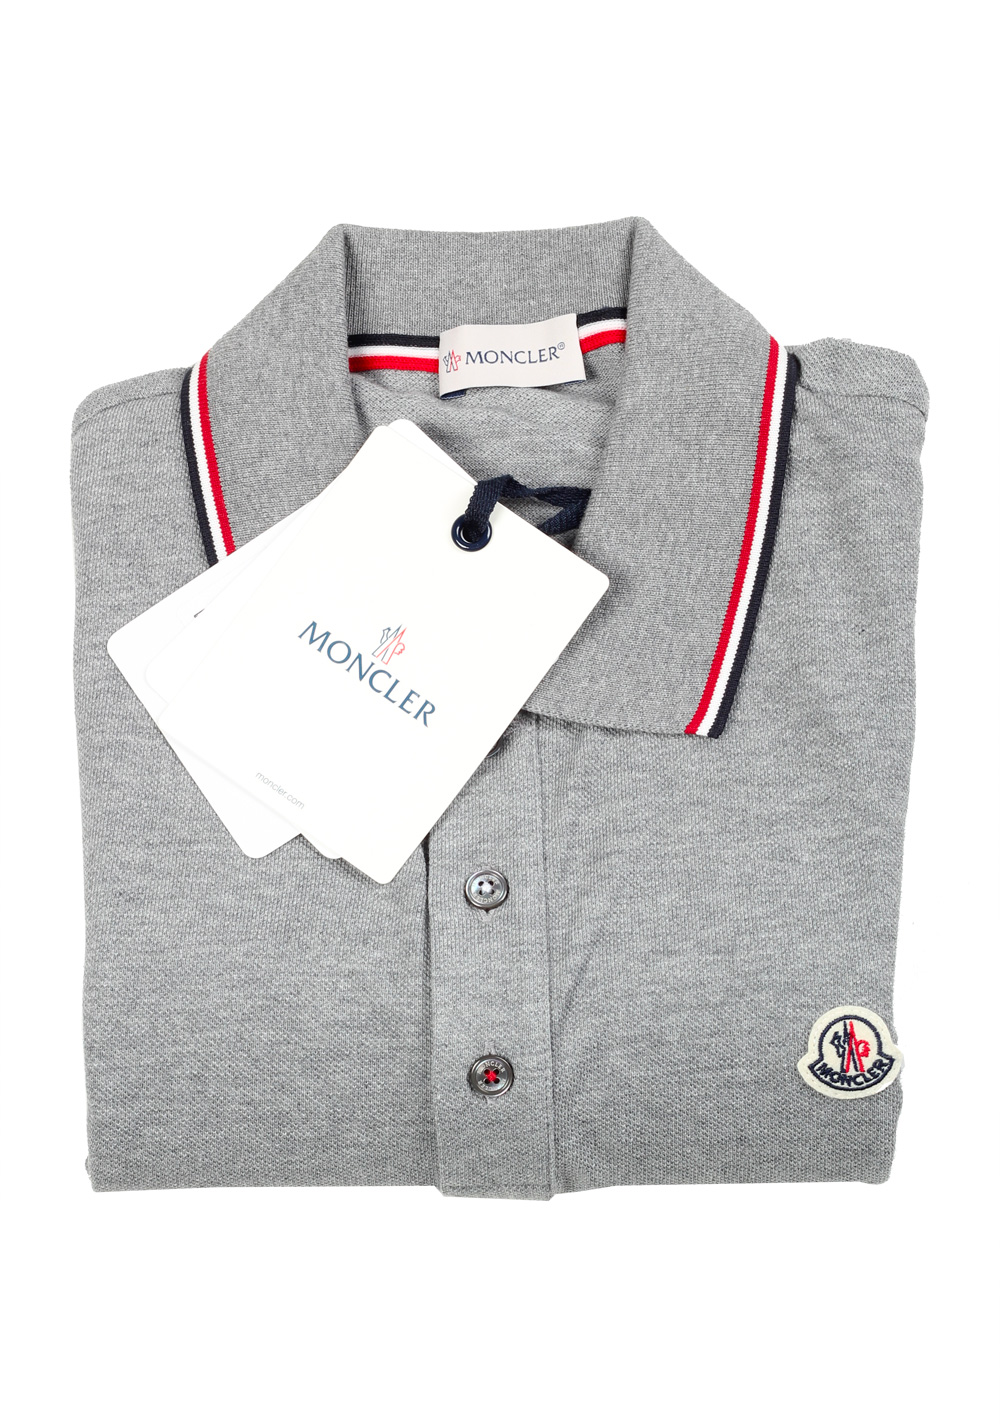 Moncler Gray Long Sleeve Polo Shirt Size L / 40R U.S. | Costume Limité